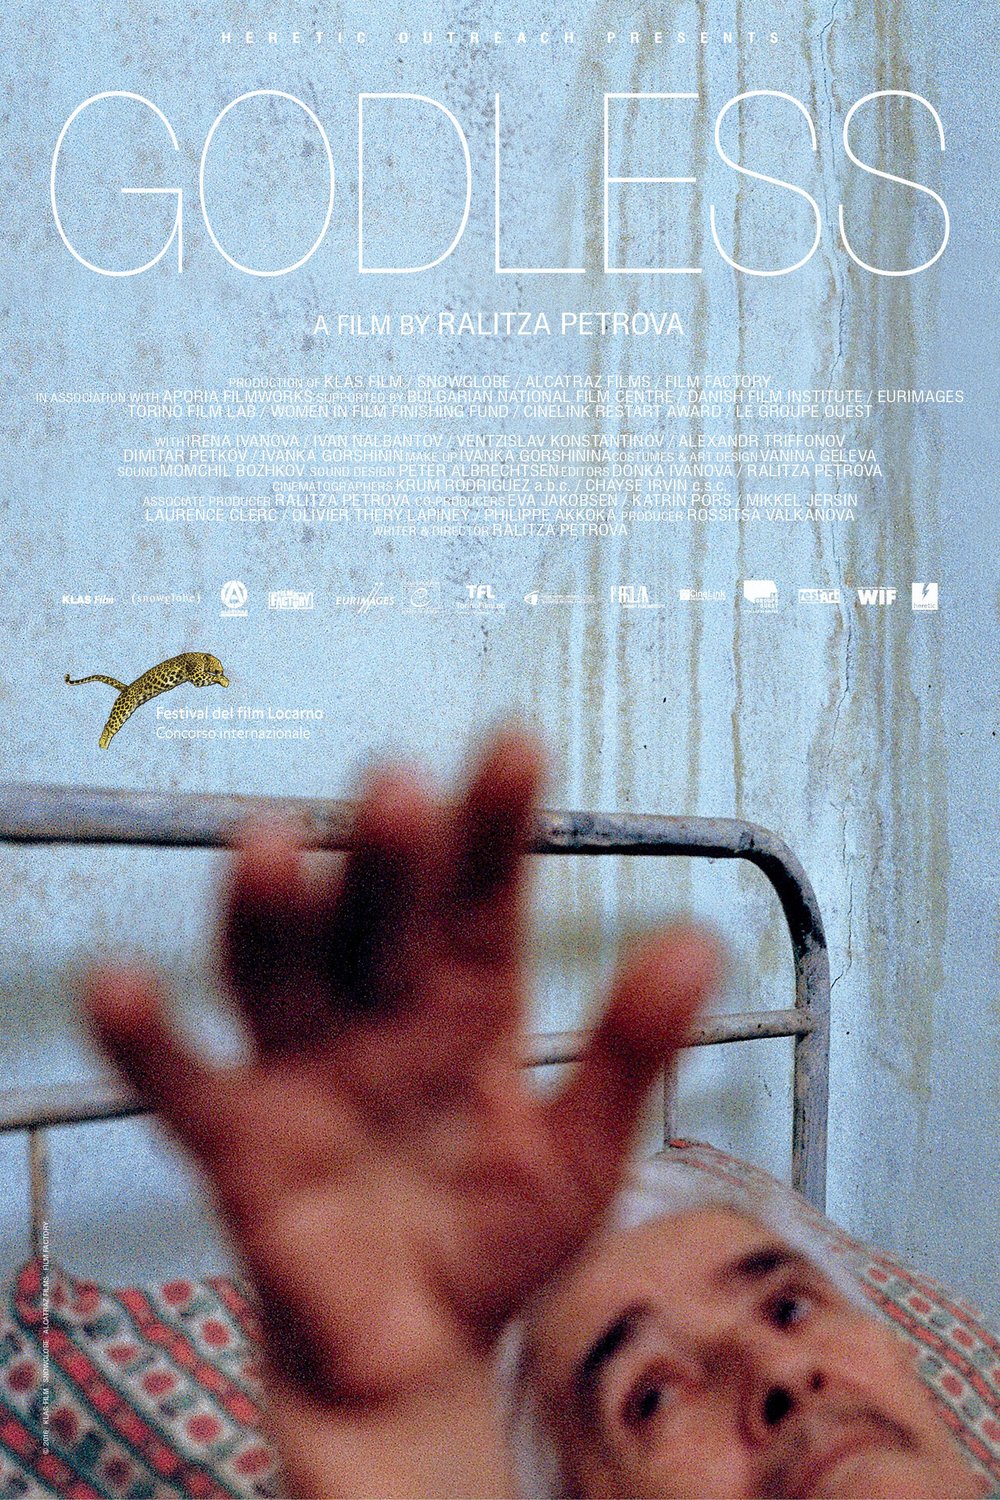 L'affiche originale du film Godless en Bulgare